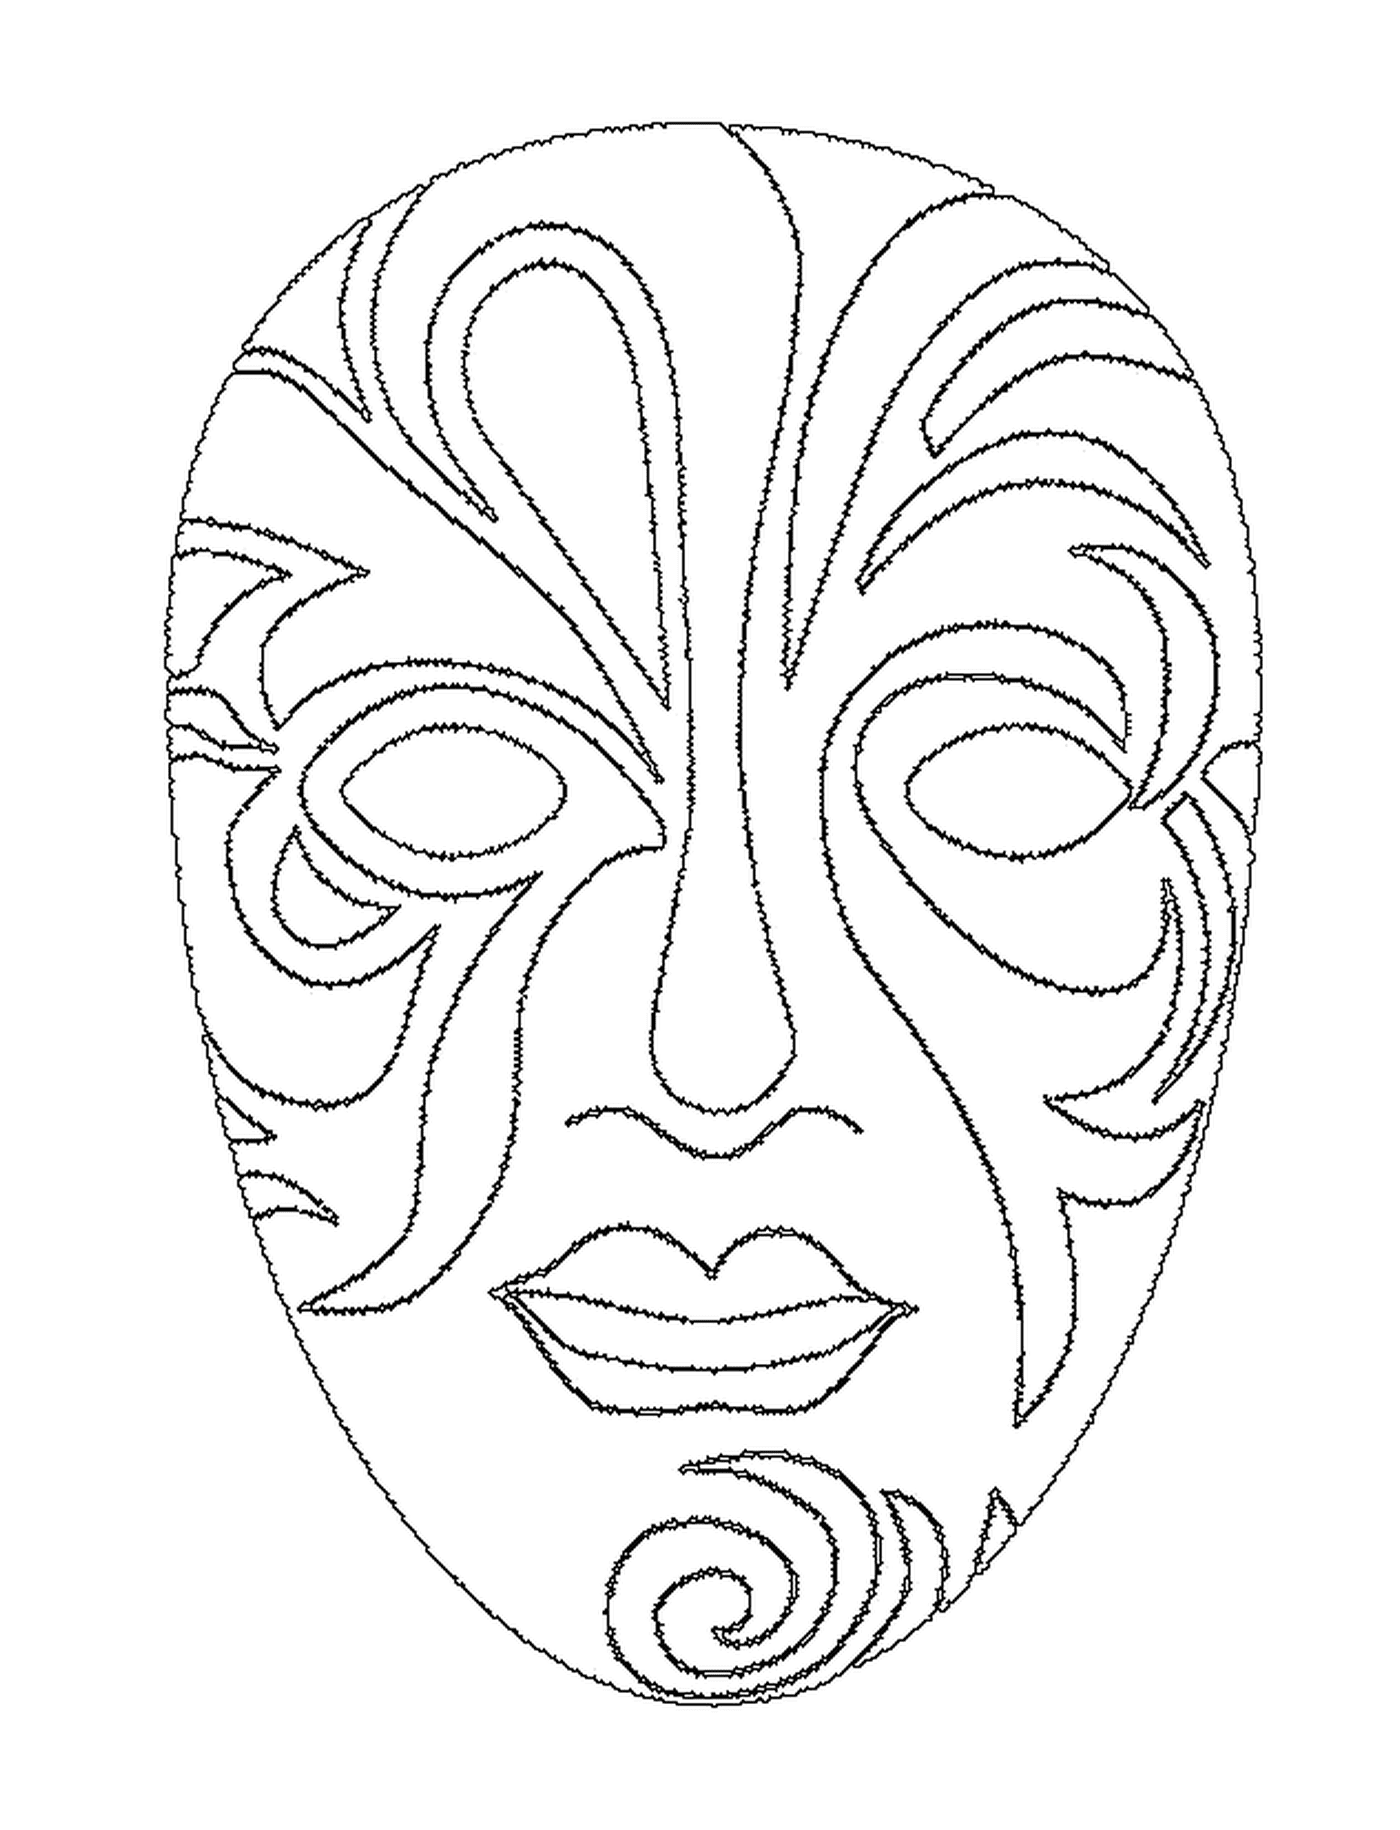  Una bonita máscara facial para el carnaval 